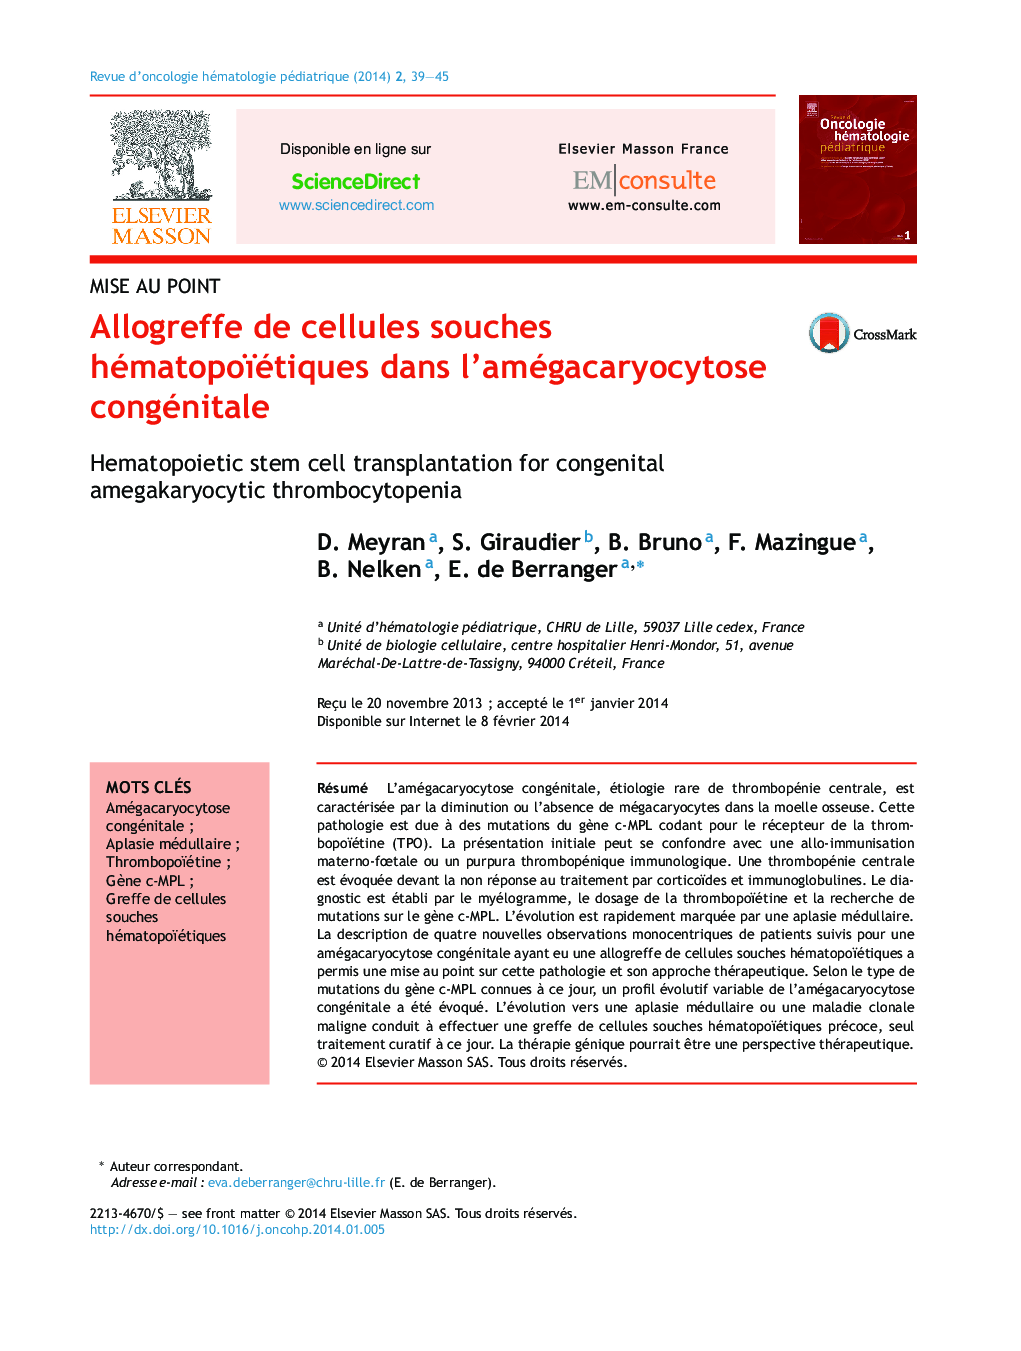 Allogreffe de cellules souches hématopoïétiques dans l'amégacaryocytose congénitale